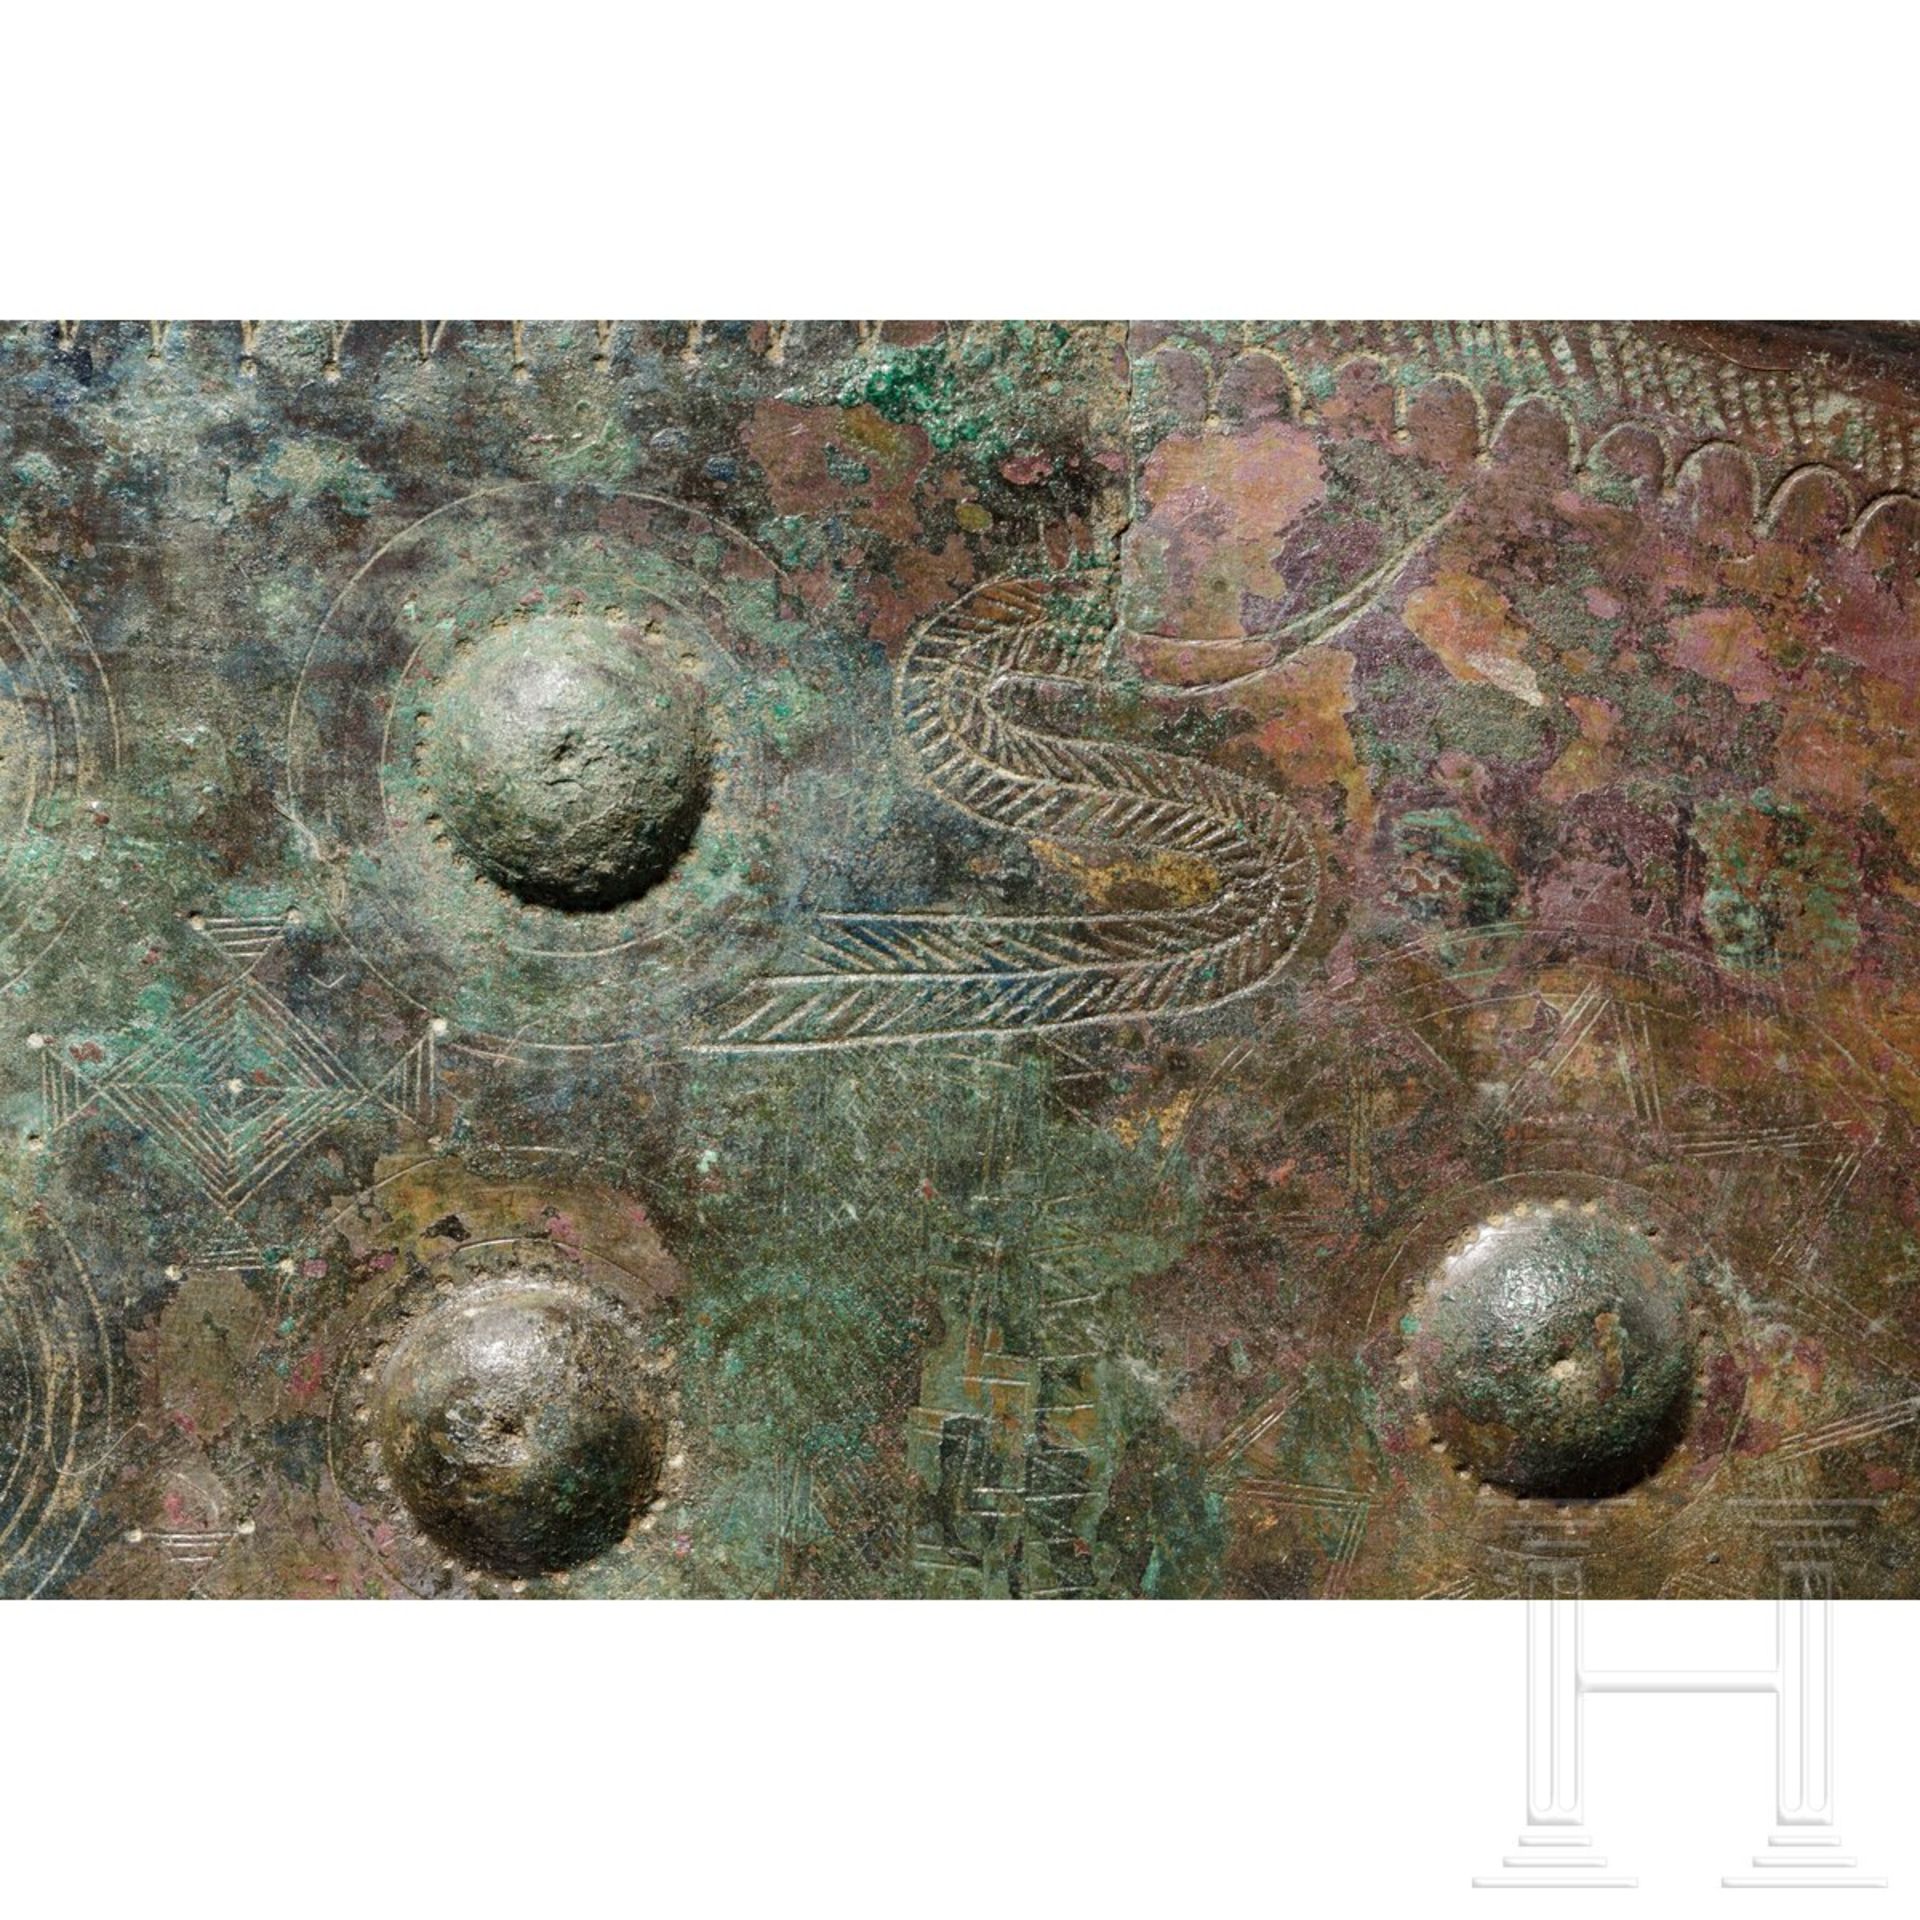 Villanova-Bronze-Gürtel mit Wasservögeln, 800 - 750 v. Chr. - Bild 6 aus 7